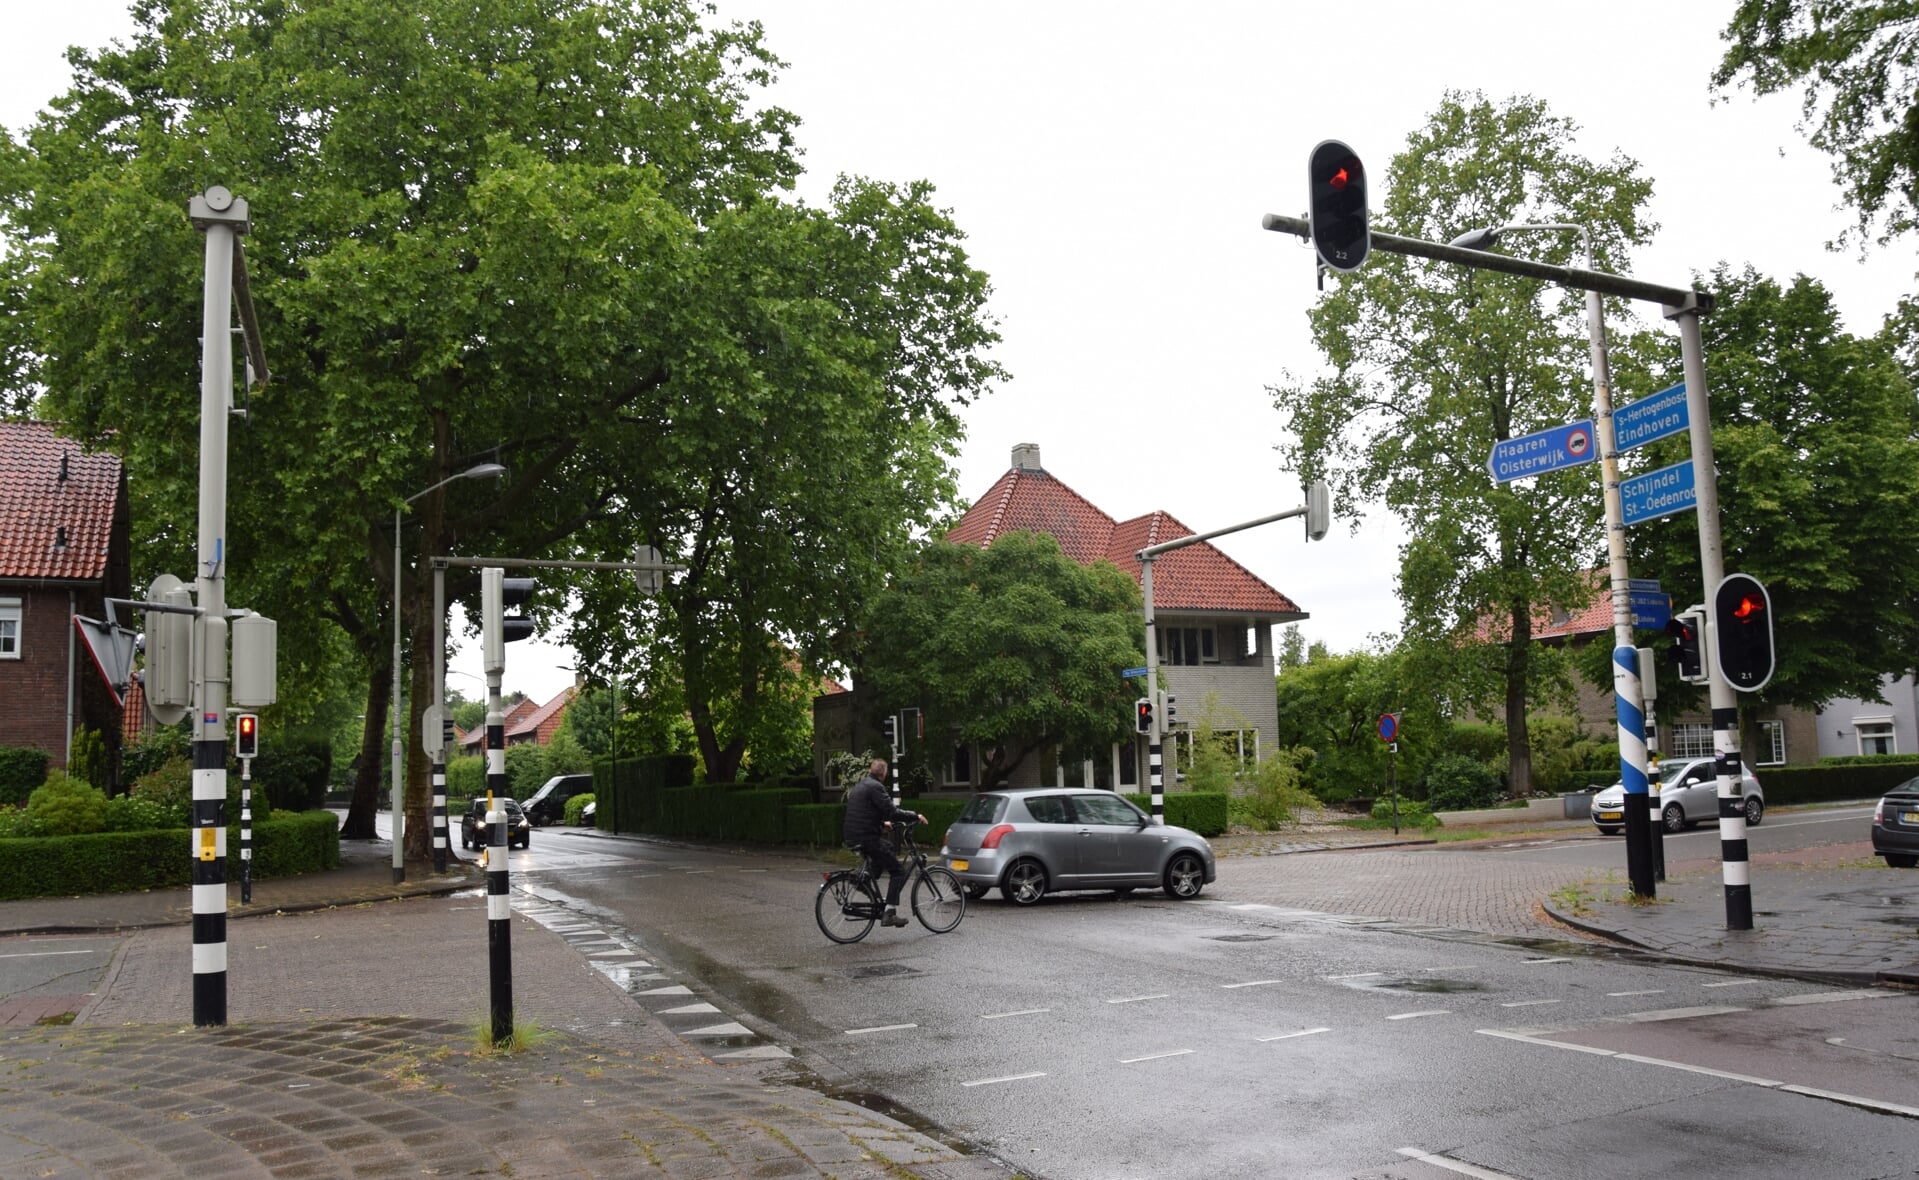 De oude palen maar met nieuwe slimme stoplichten. Deze moeten er voor zorgen dat het verkeer op het kruispunt Mgr. Wilmerstraat/Vic. van Alphenlaan/Bosscheweg sneller kan oversteken. (Foto: Rens van den Elsen).